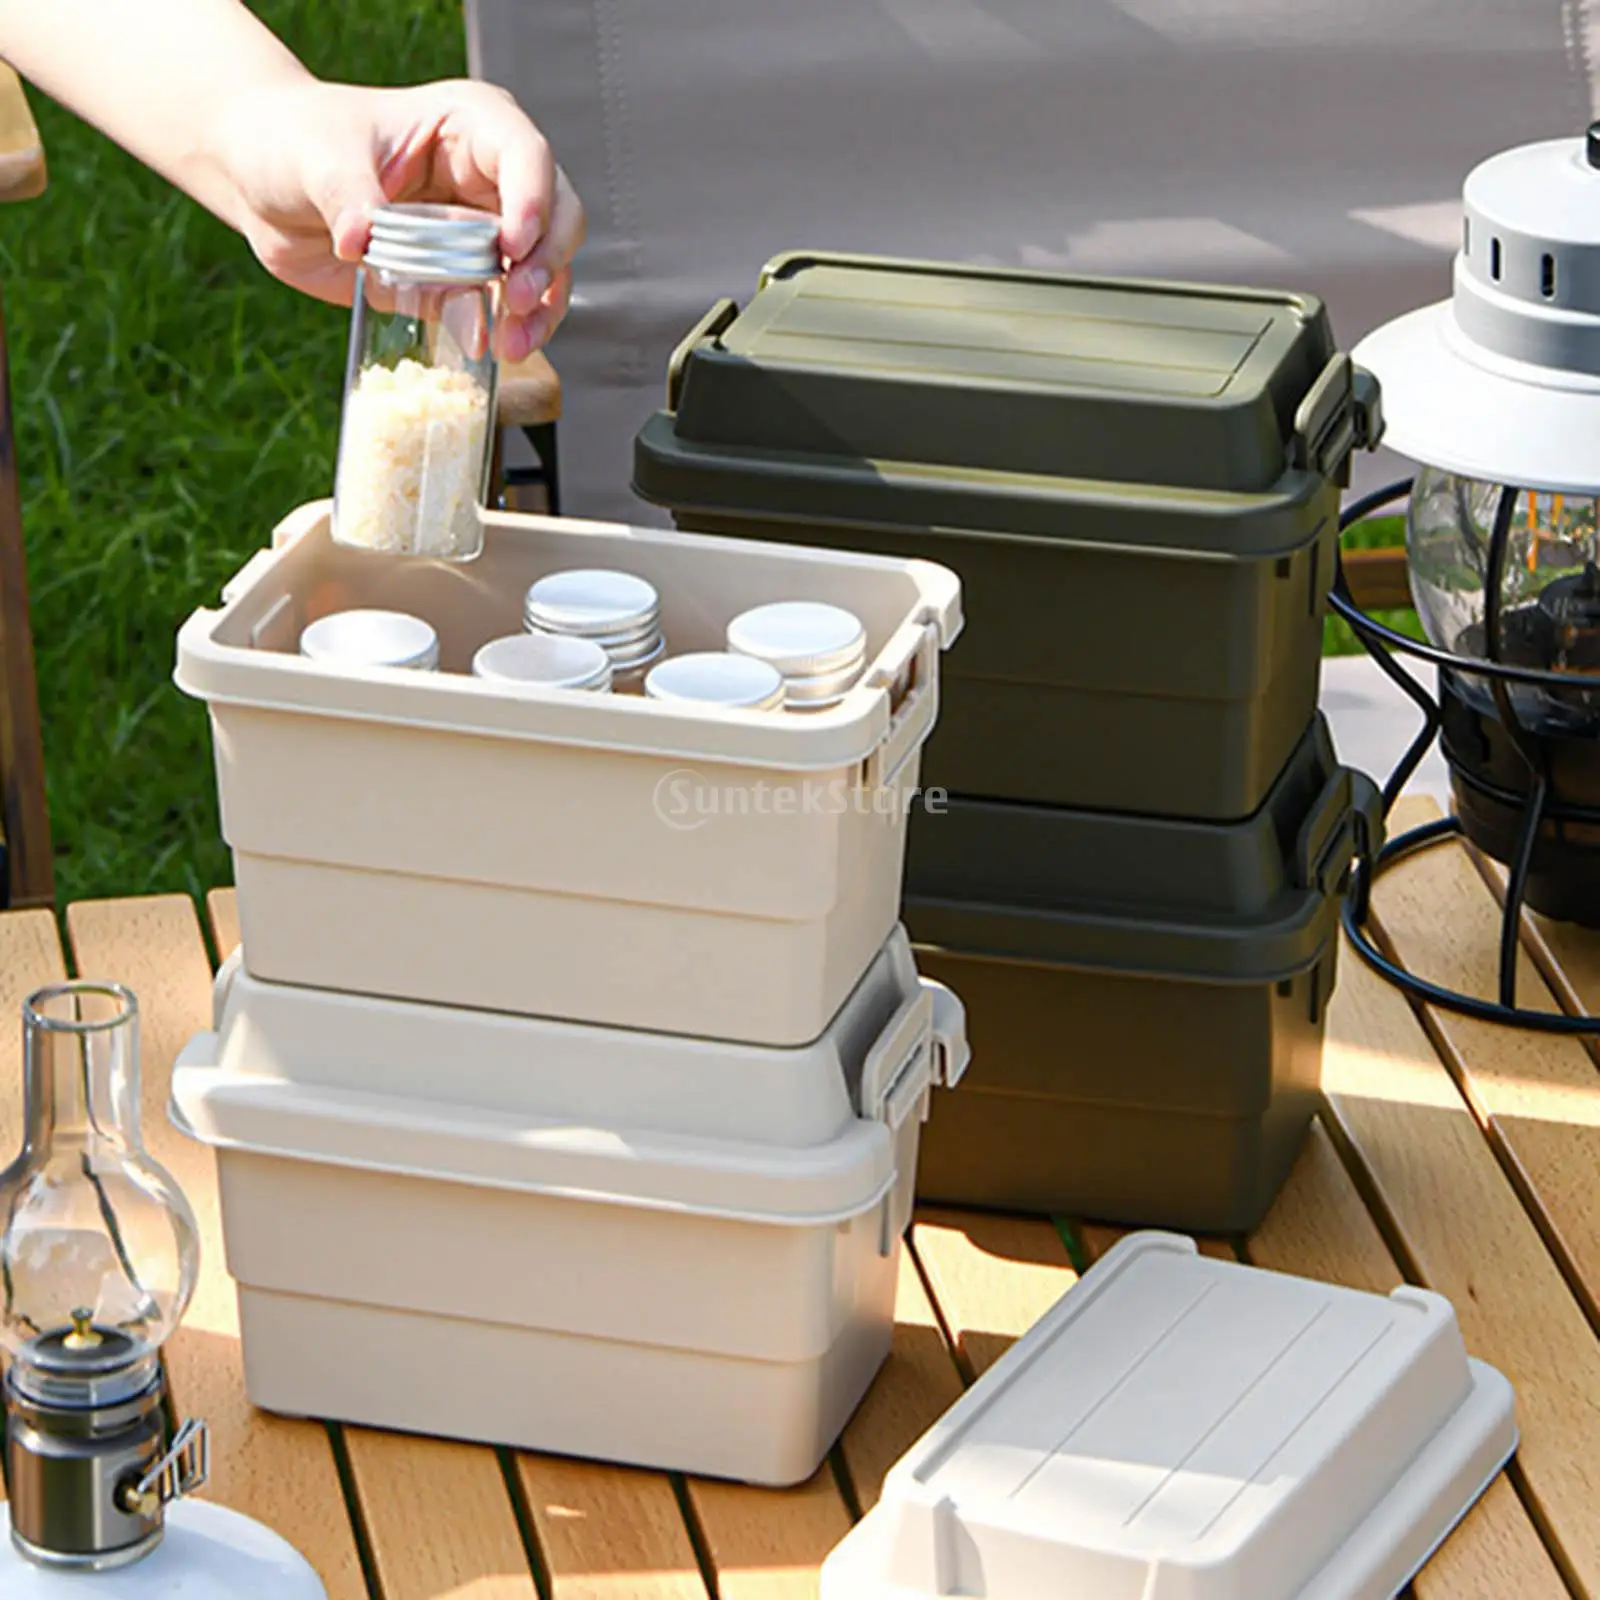 Outdoor Mini Aufbewahrung sbox Kunststoff Verdickung schloss mit Abdeckung  Camping Home Küche Grill Picknick multifunktion alen Aufbewahrung koffer -  AliExpress